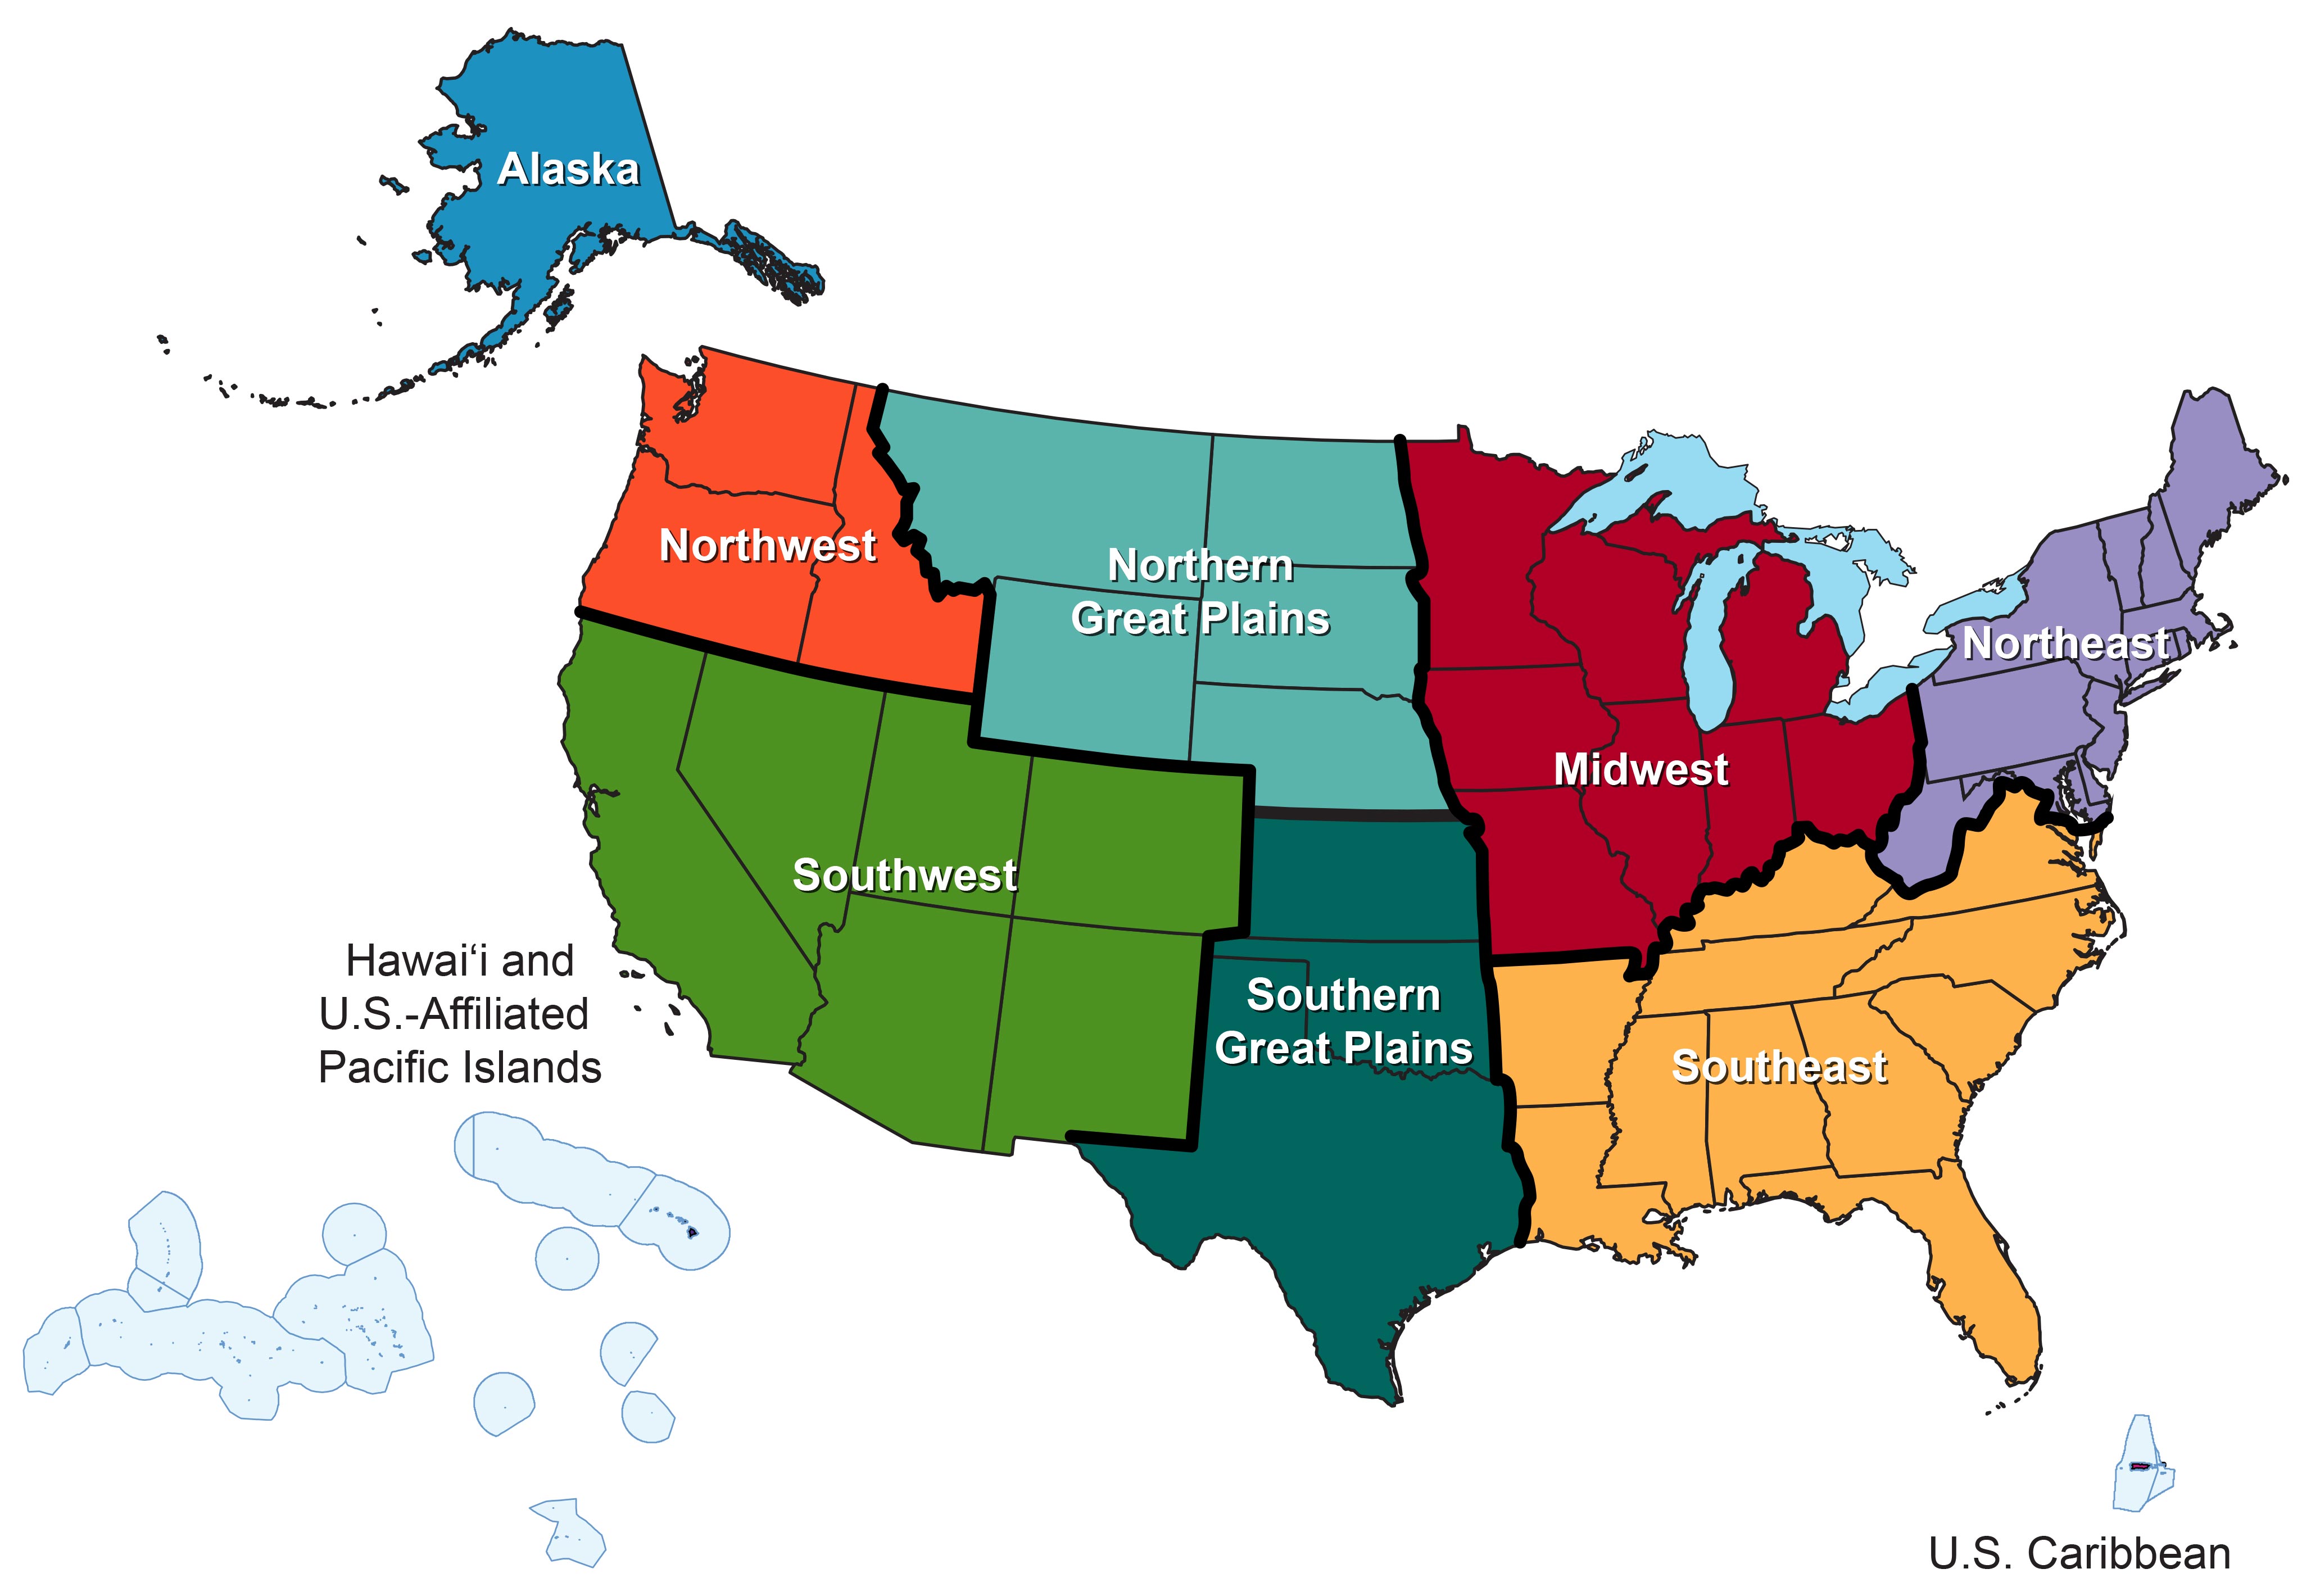 Pacific region. Pacific Northwest на карте. The Pacific Northwest and Alaska. Northern great Plains на карте. Great Plains USA.